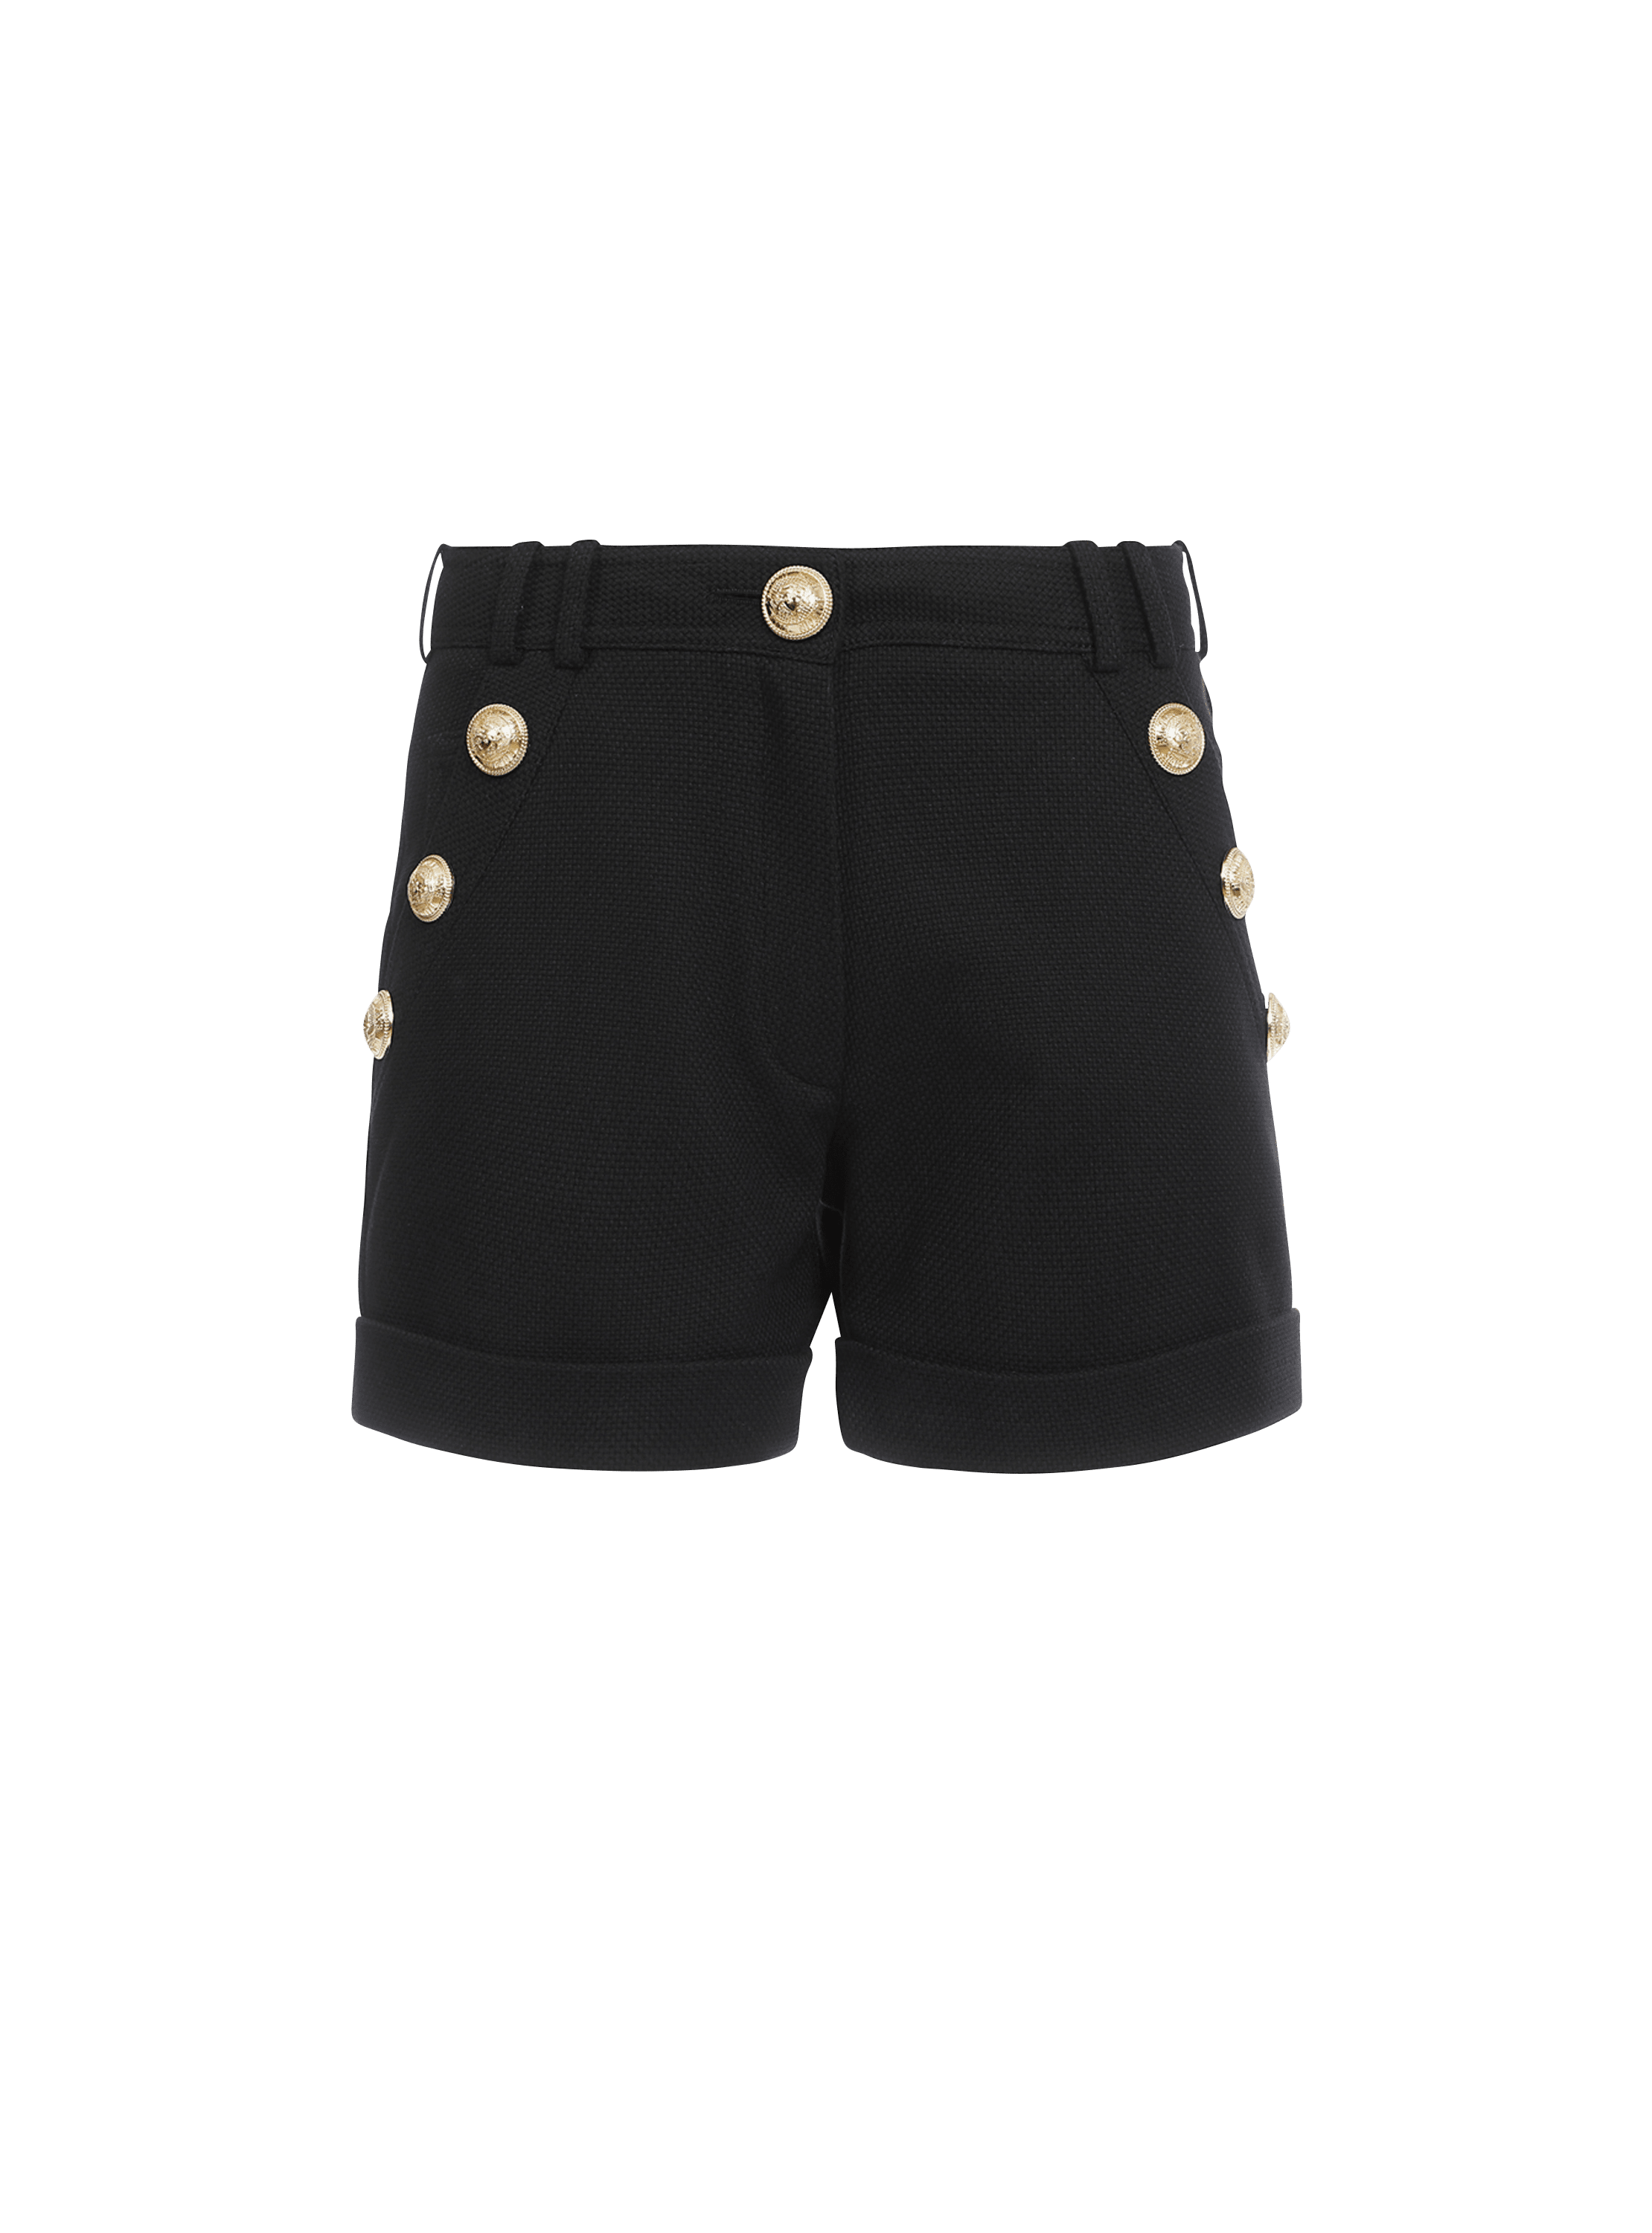 Cotton low-rise shorts, black, hi-res